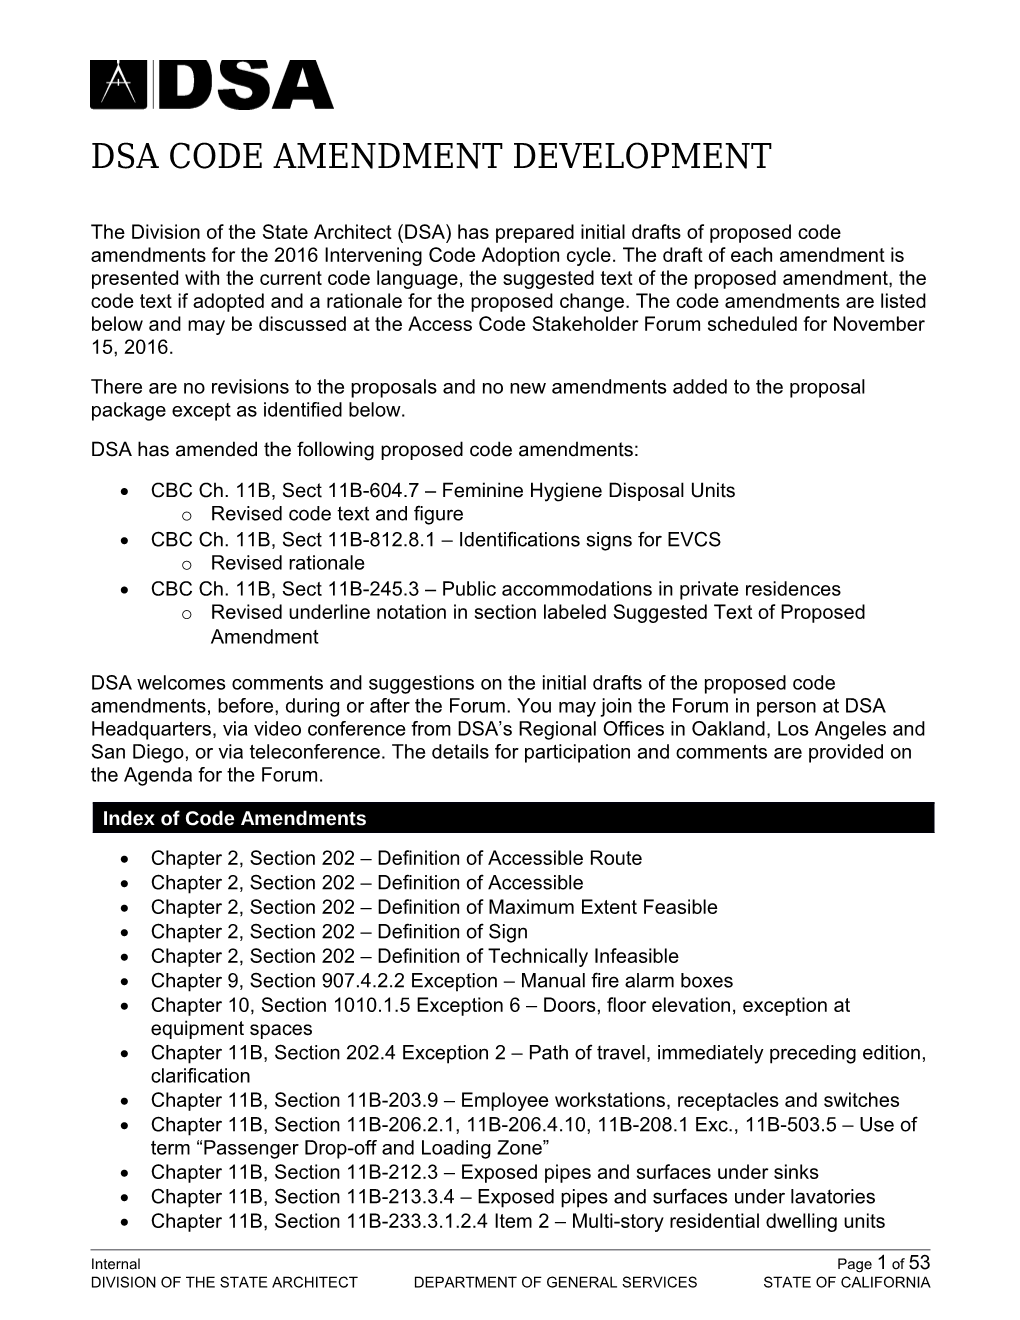 DSA Code Amendment Development, November 15, 2016